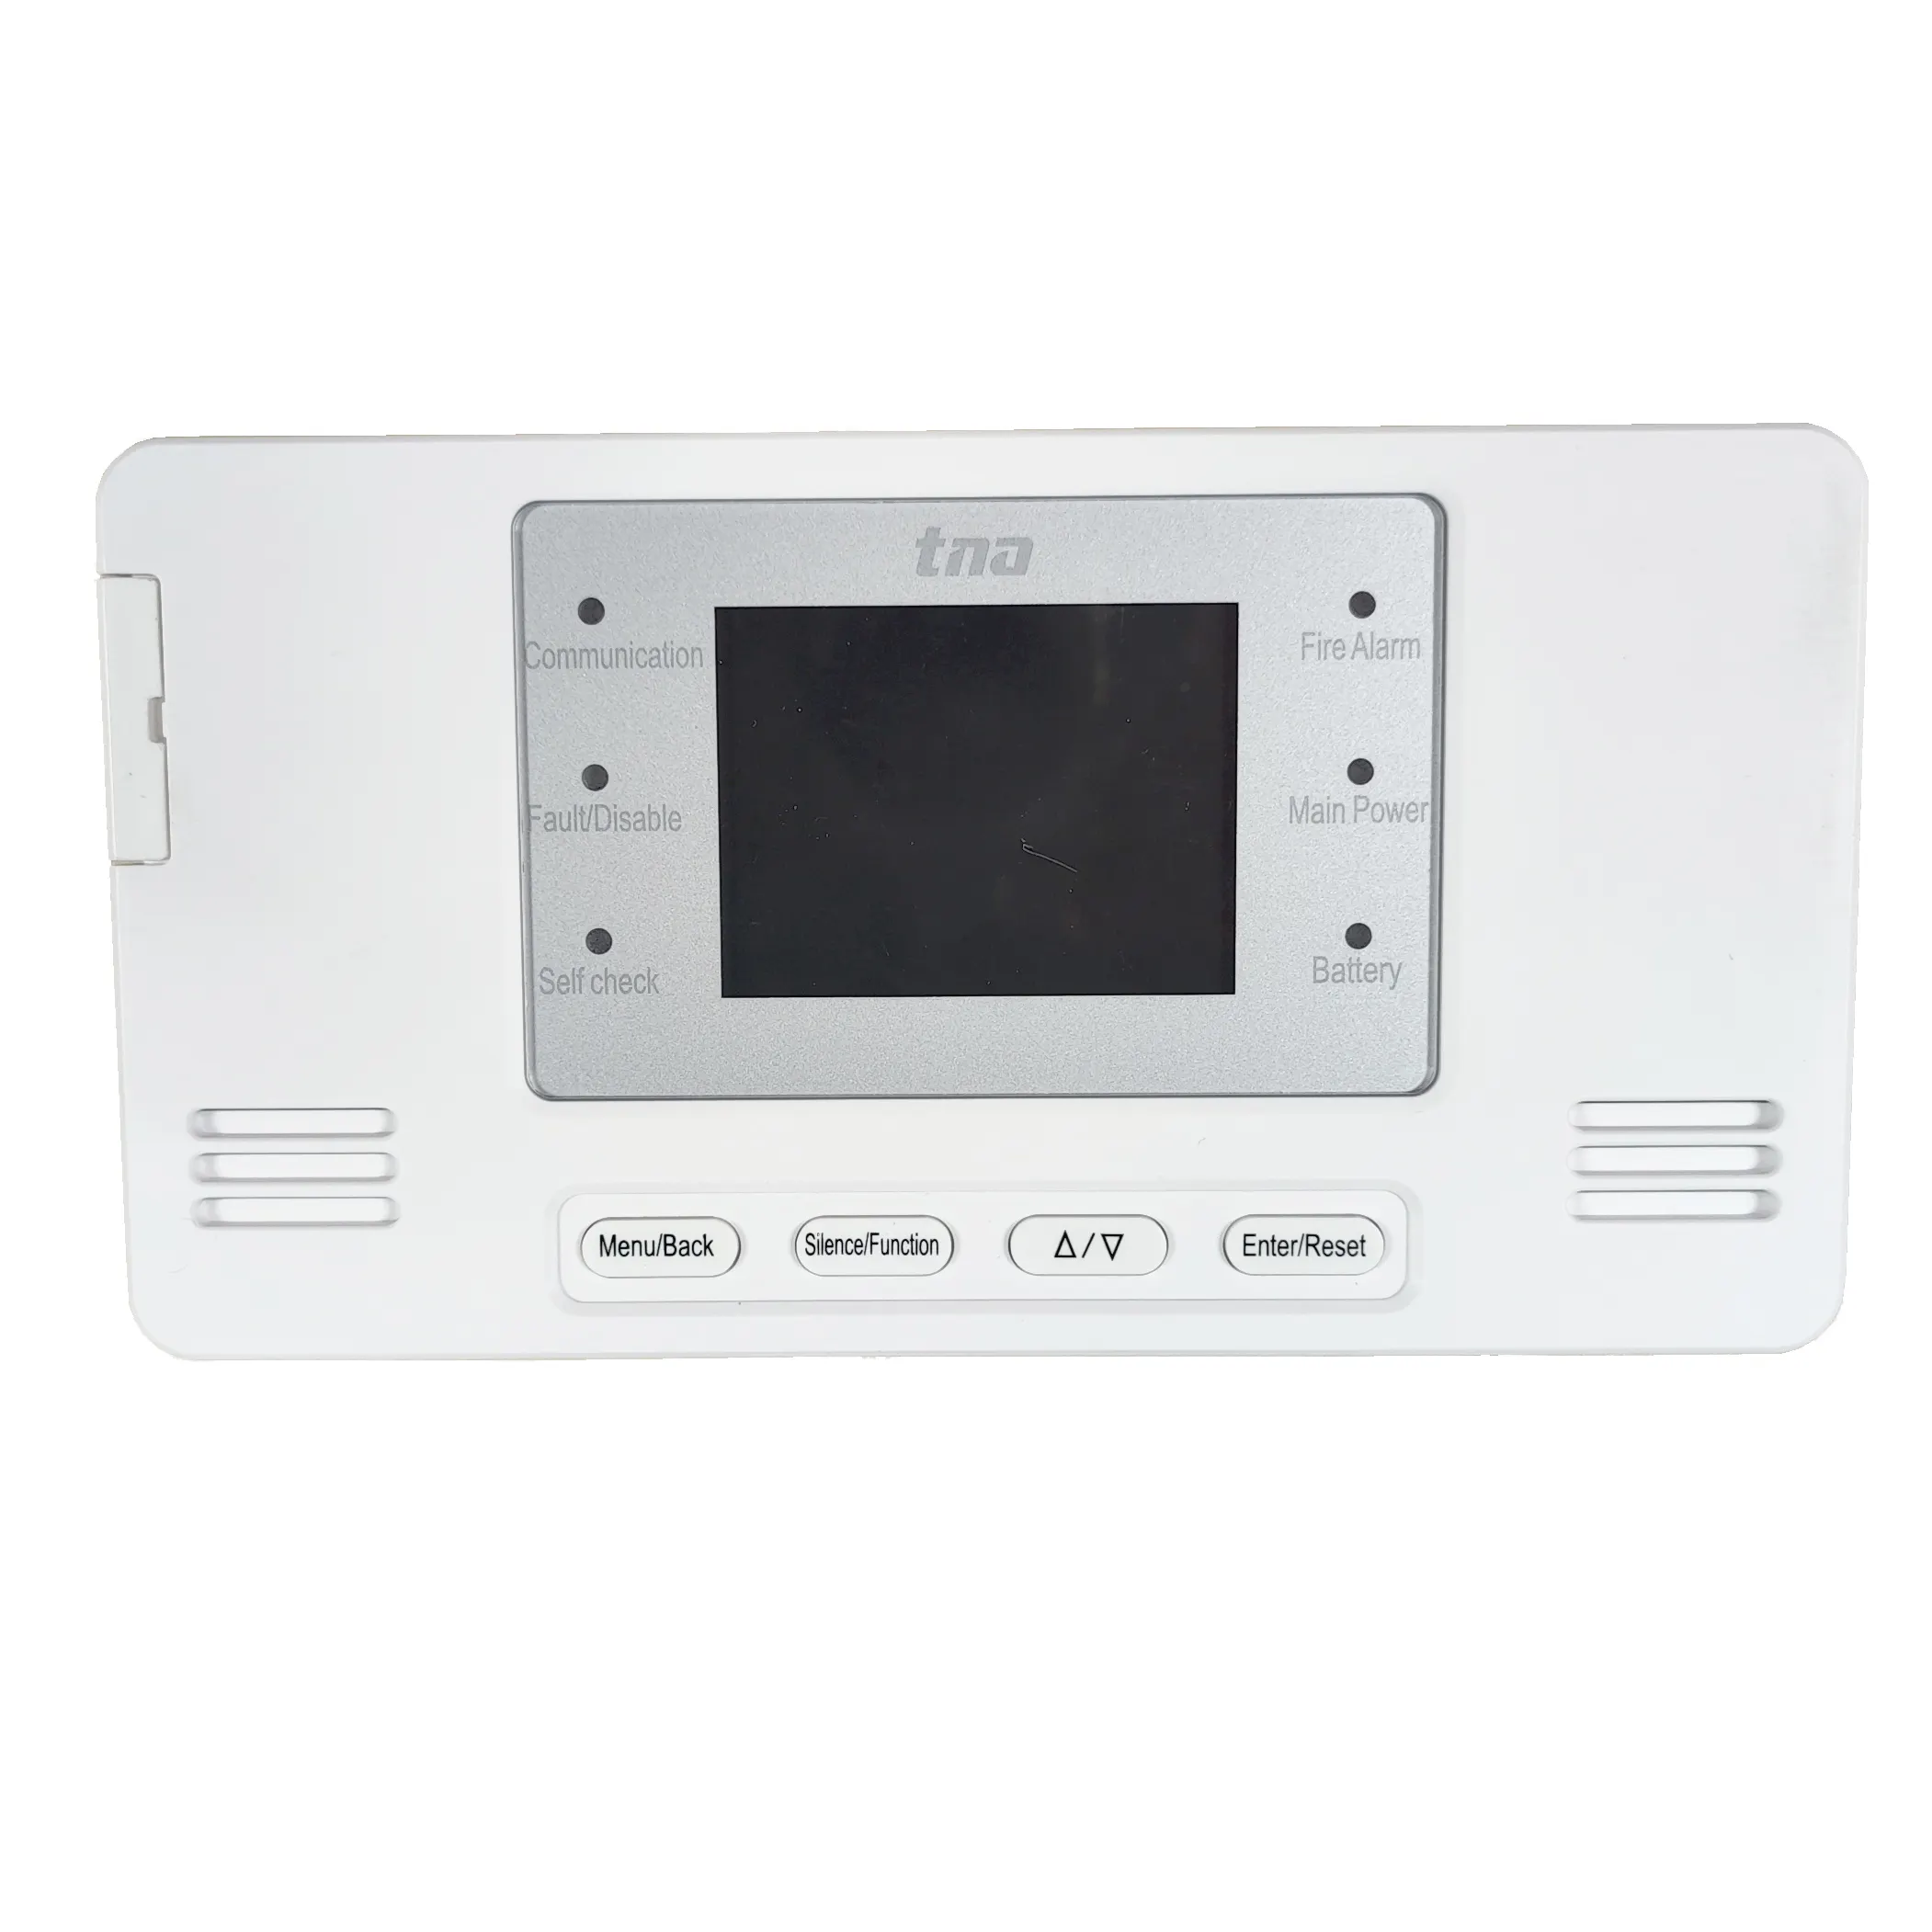 Tanda TX3001 Wireless Fire Alarm Painel de Controle com Tela LCD suporta fumaça sem fio & heat & detectores de gás para detecção de incêndio